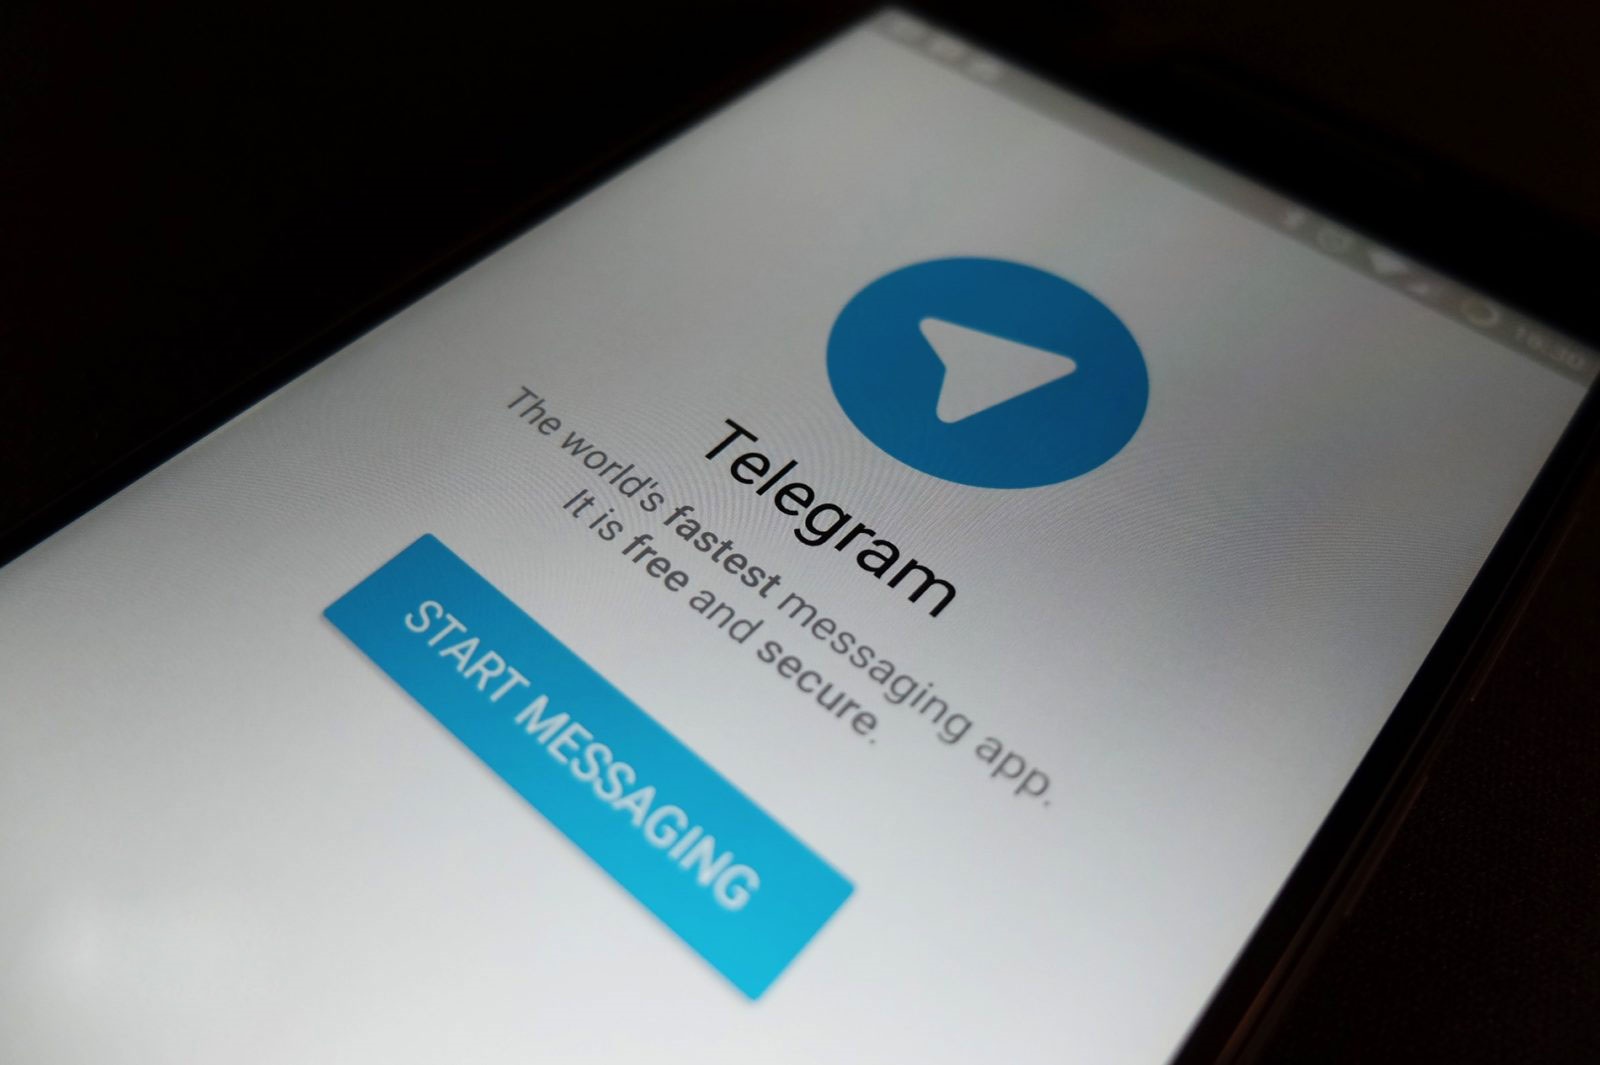 فیلتر مجدد تماس صوتی تلگرام از سوی اپراتورهای مخابراتی